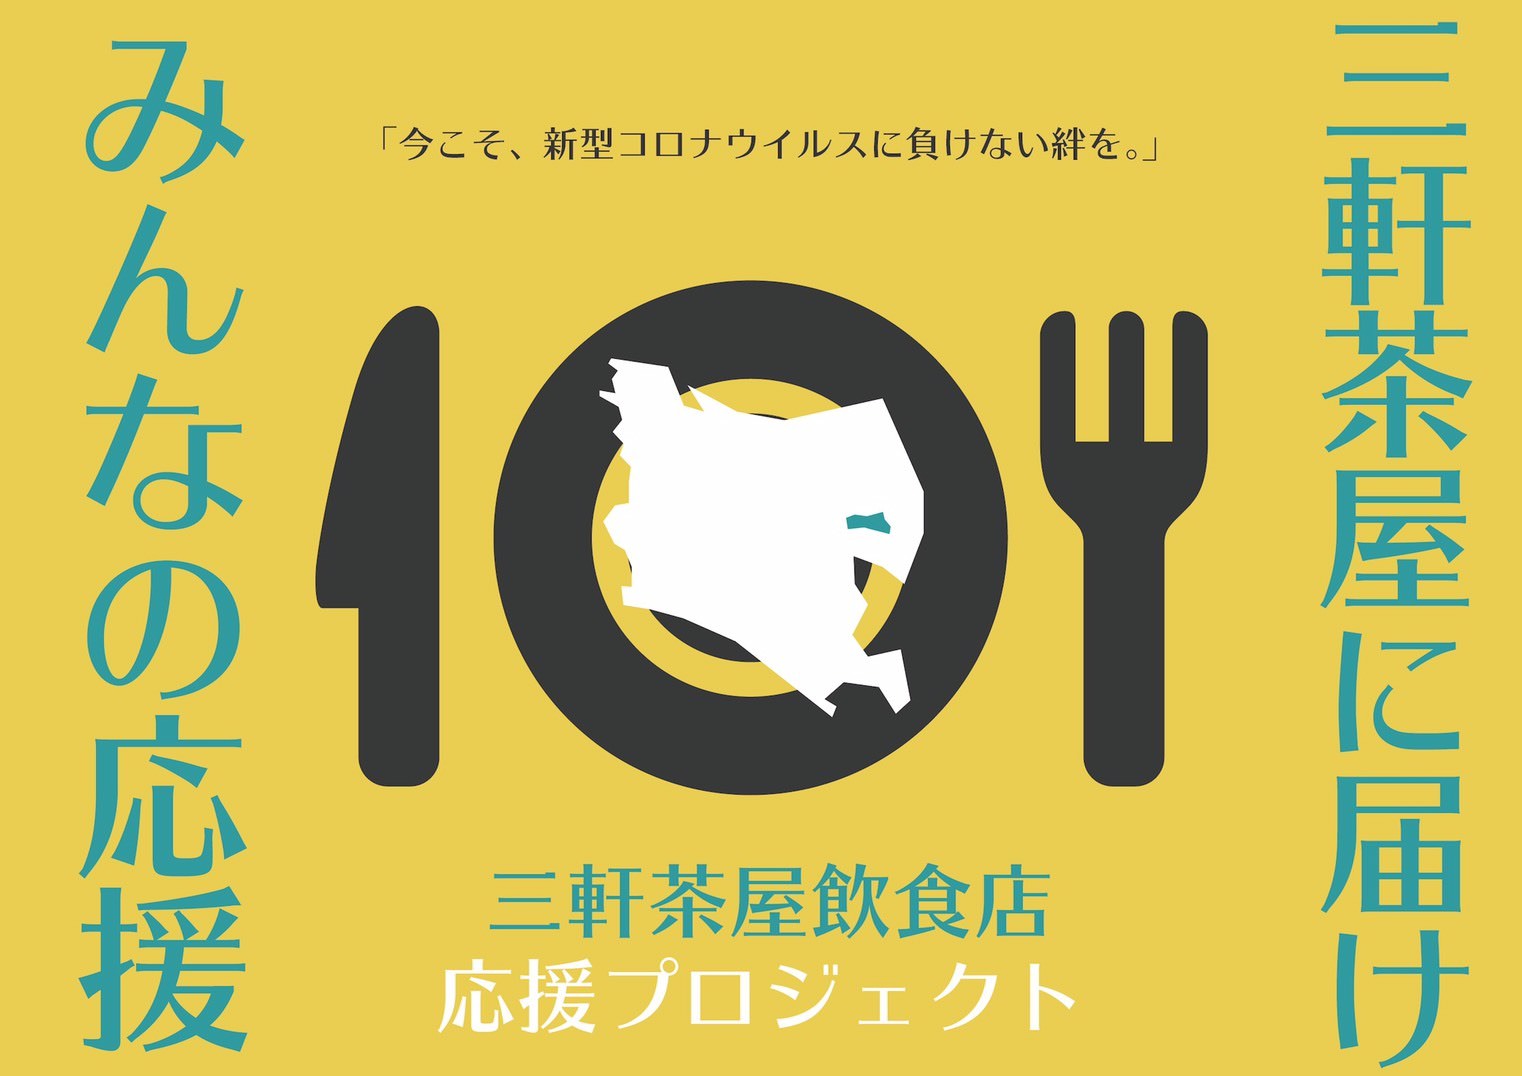 「ほっともっと」のから揚・ビビンバを食べて現金を当てよう！抽選で最大１万円が当たるキャンペーン開催